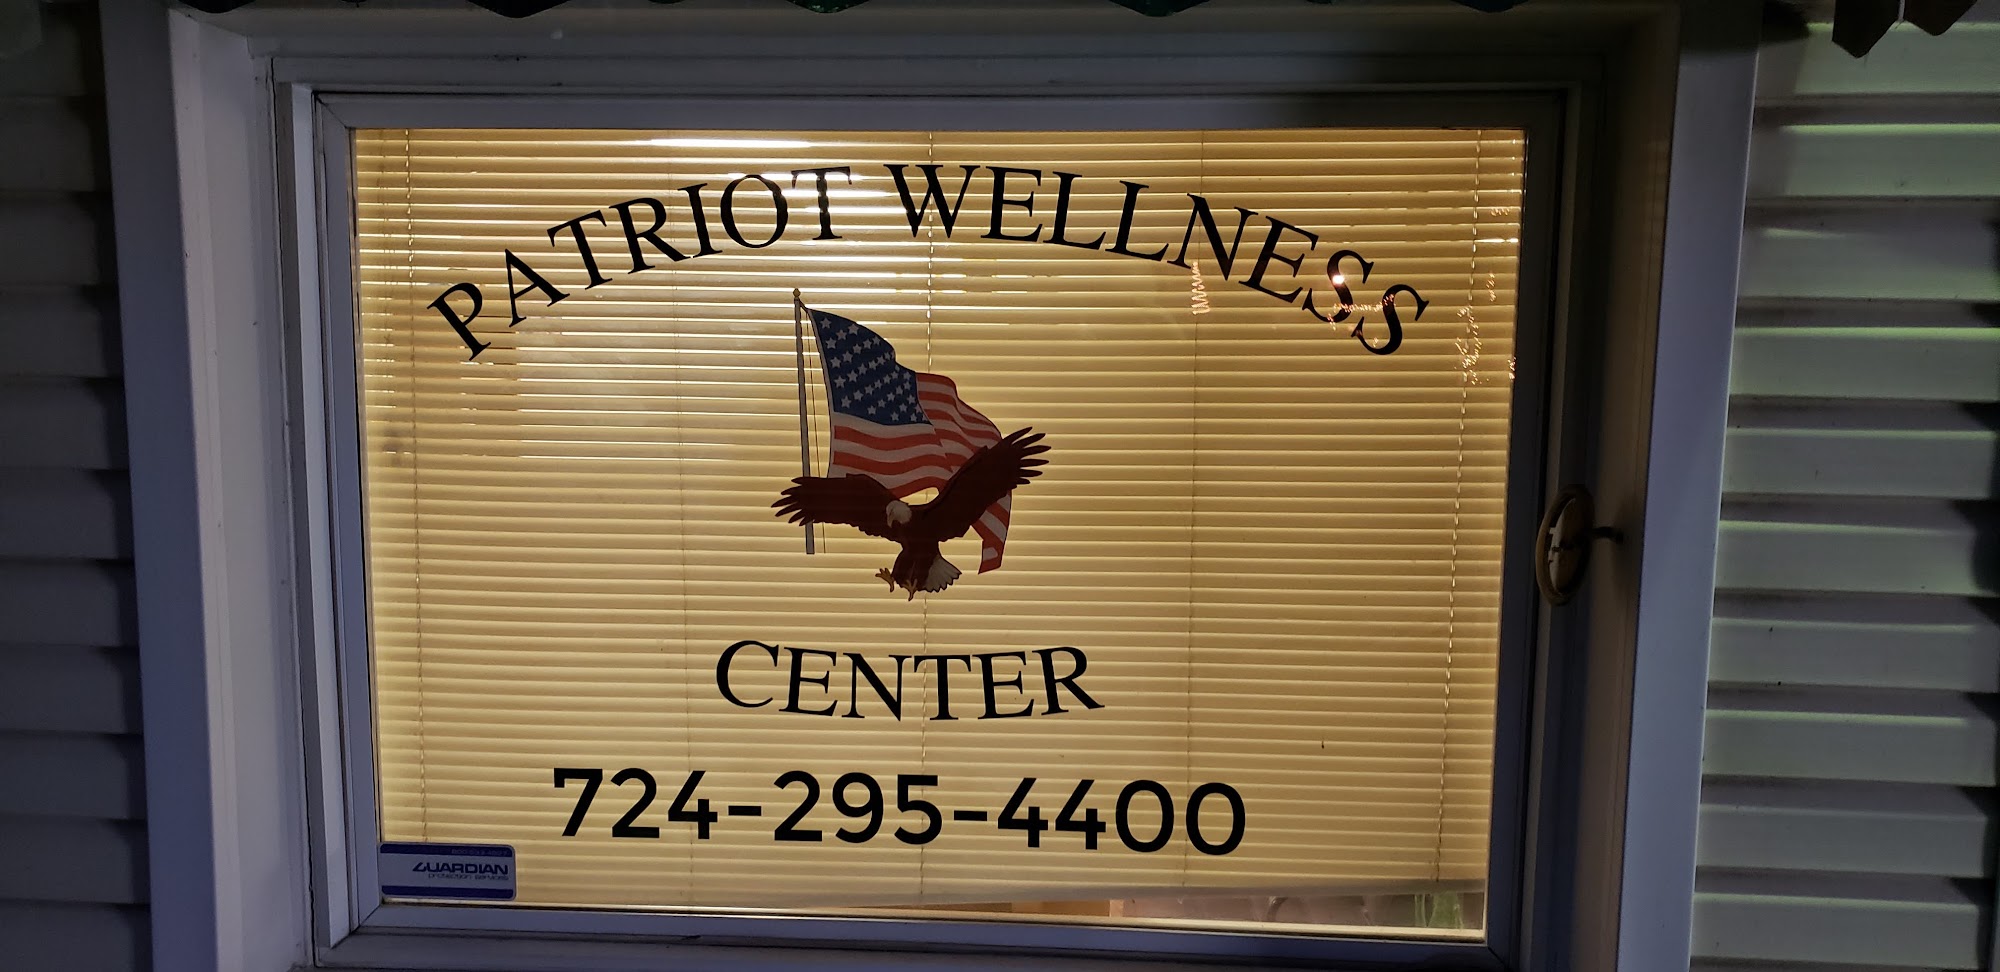 Patriot Wellness Center